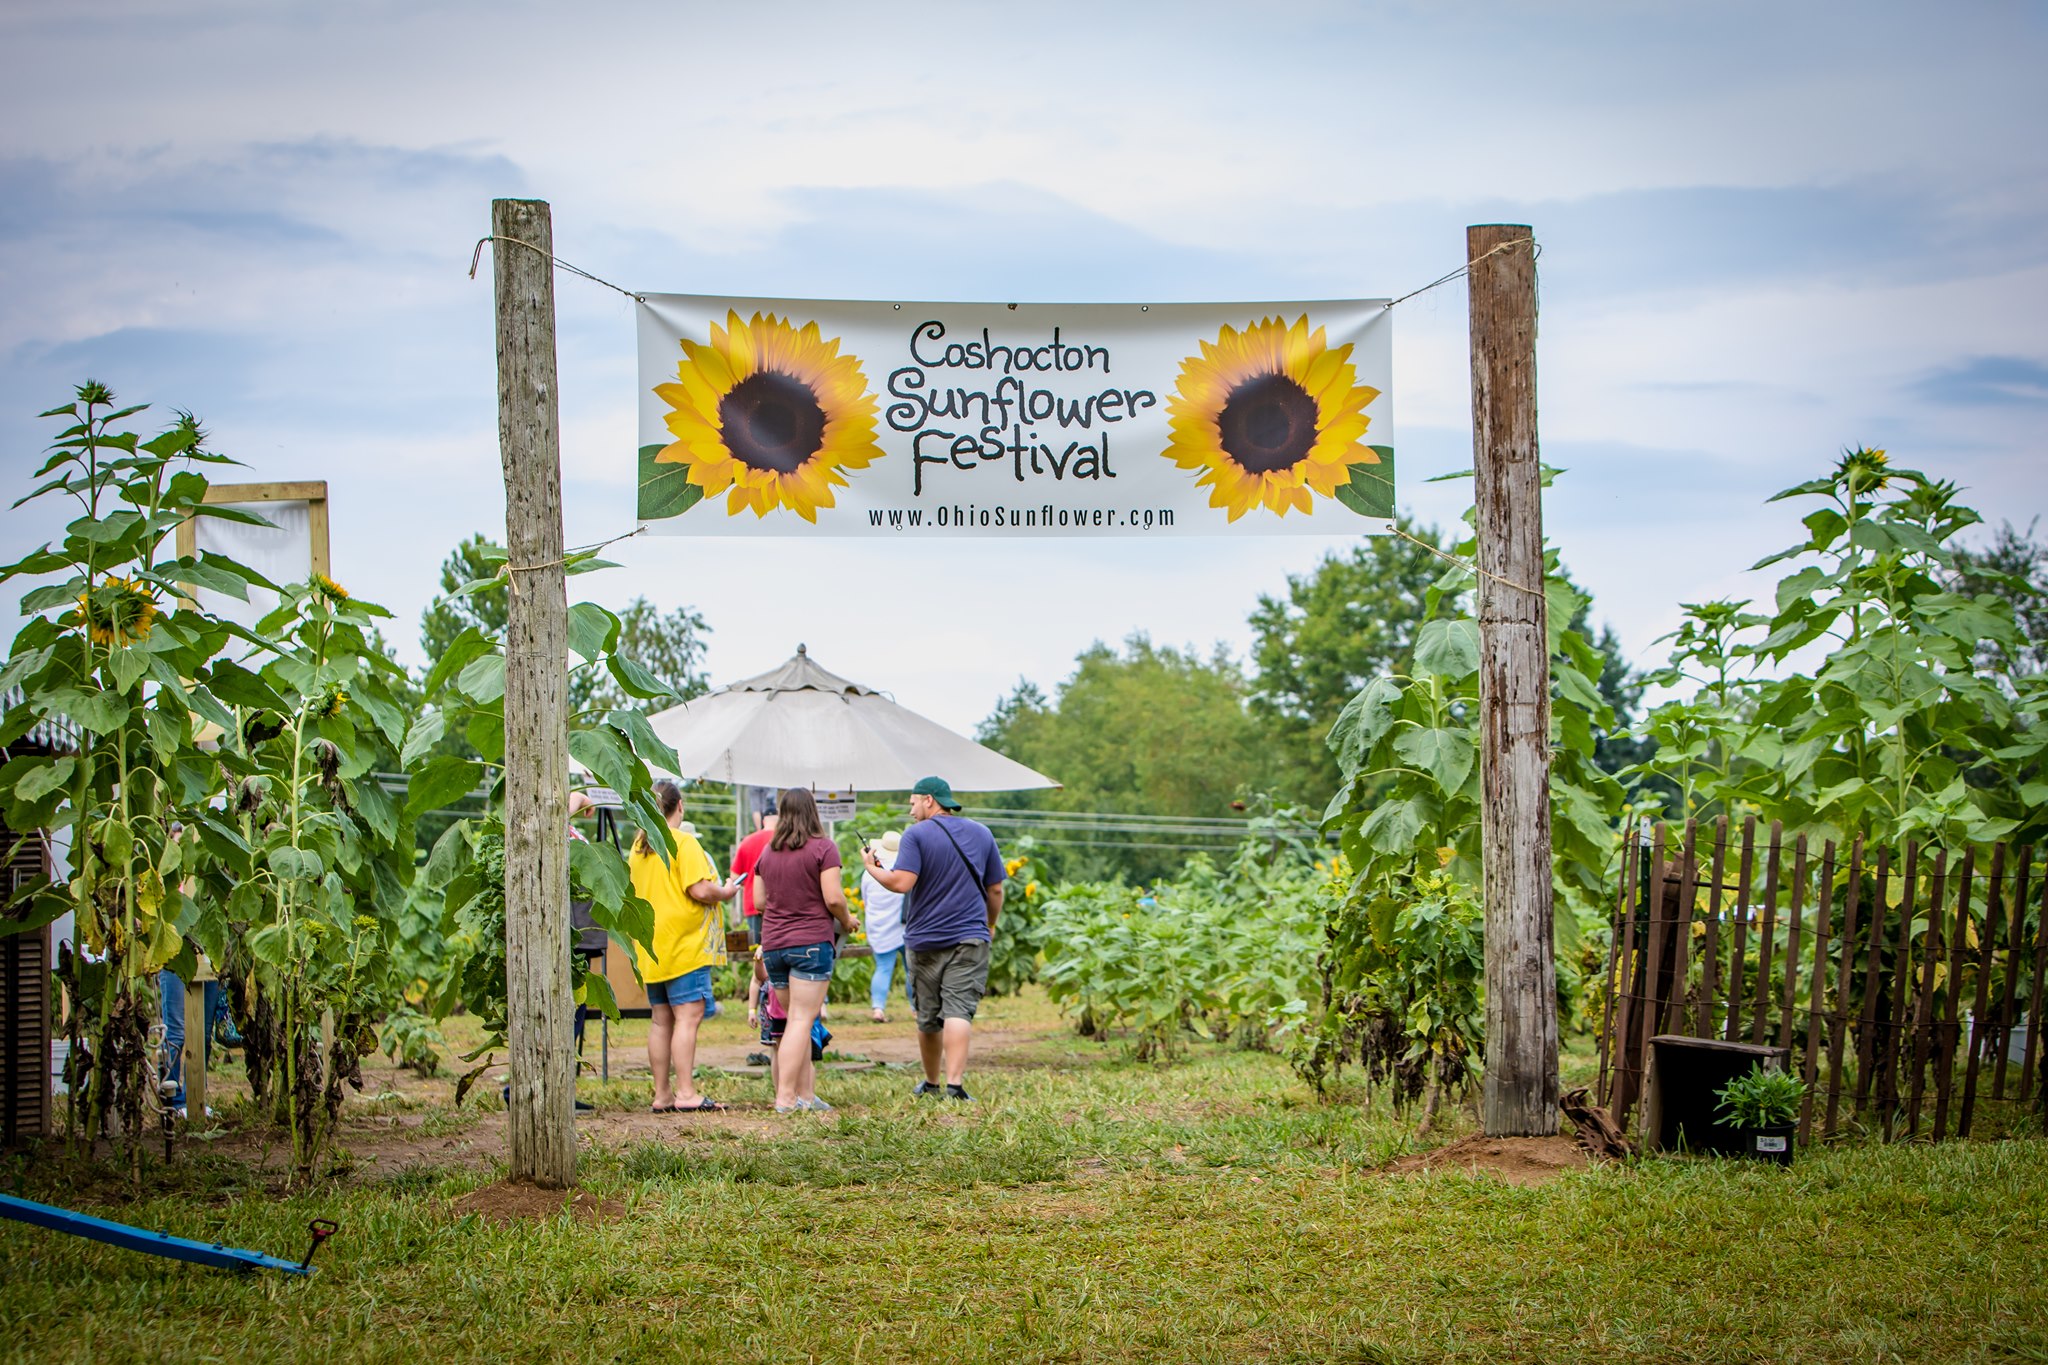 Best Sunflower Festival in Ohio Coshocton Sunflower Festival